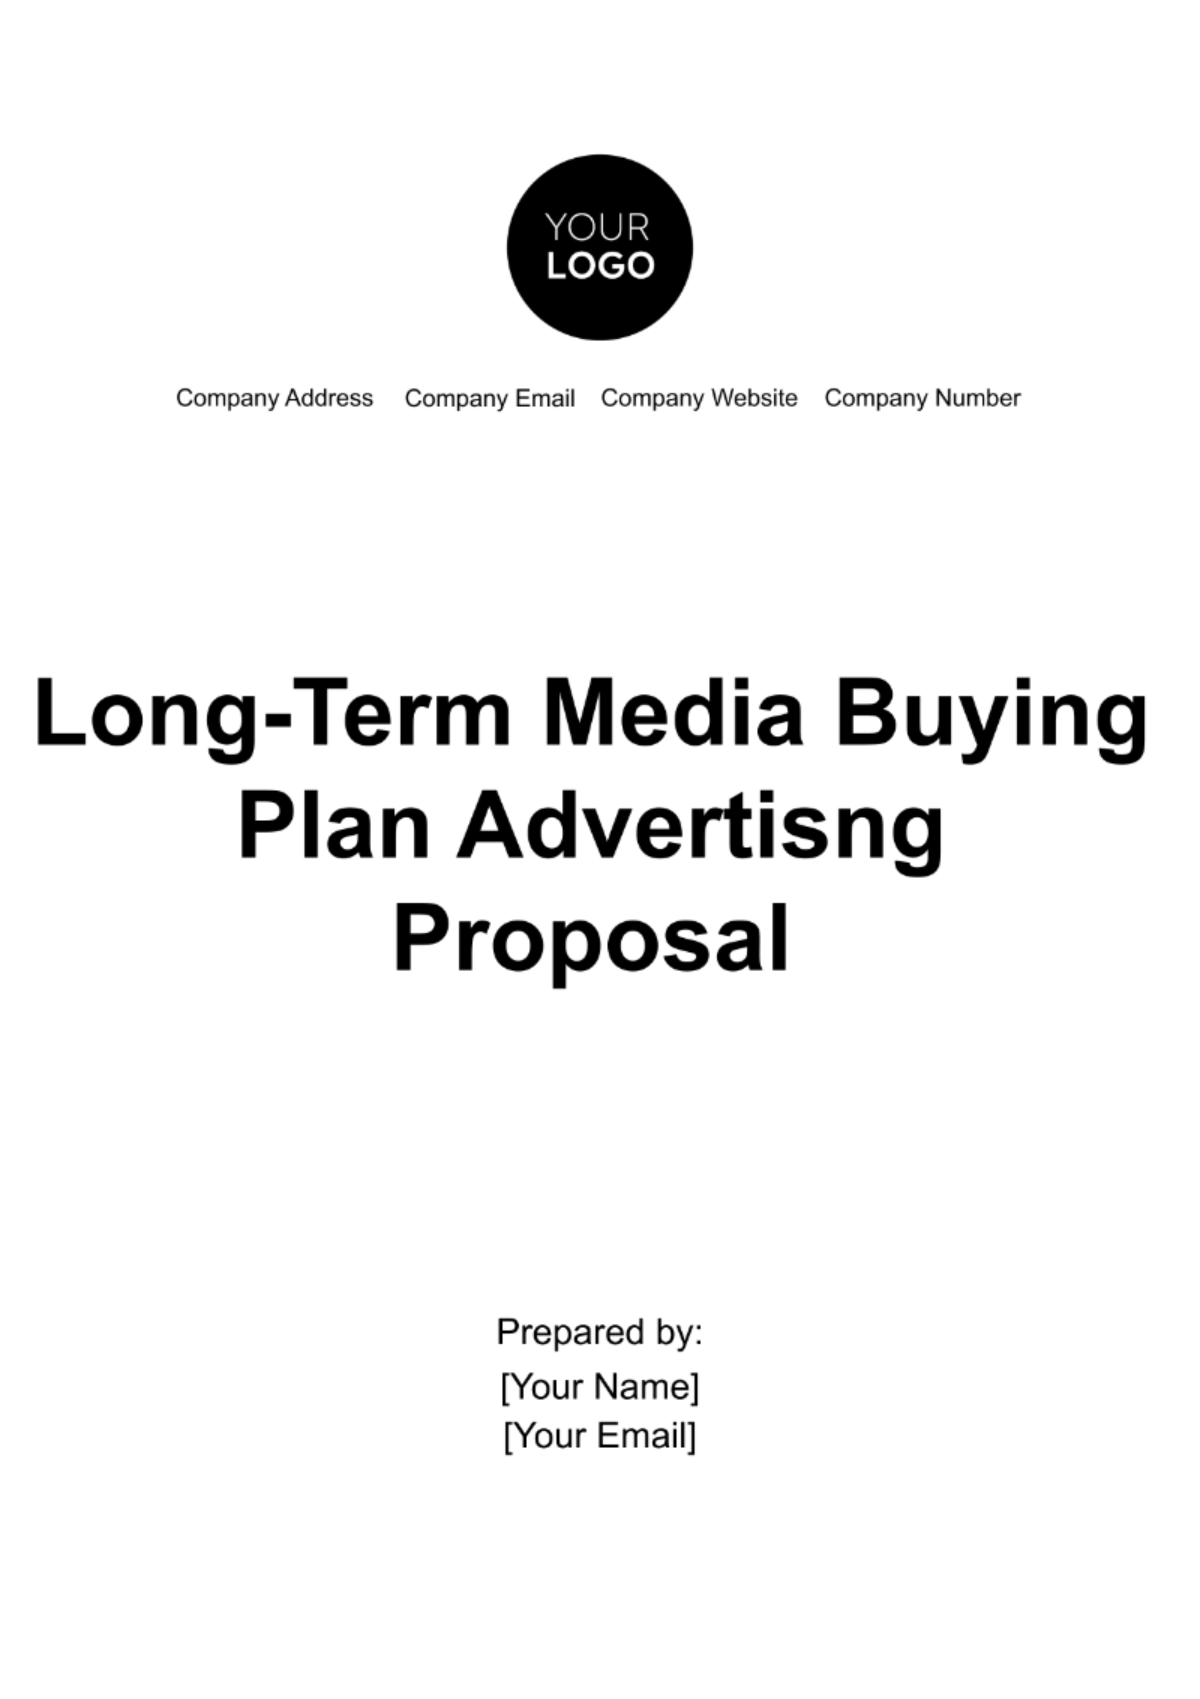 Free Long-Term Media Buying Plan Advertising Proposal Template